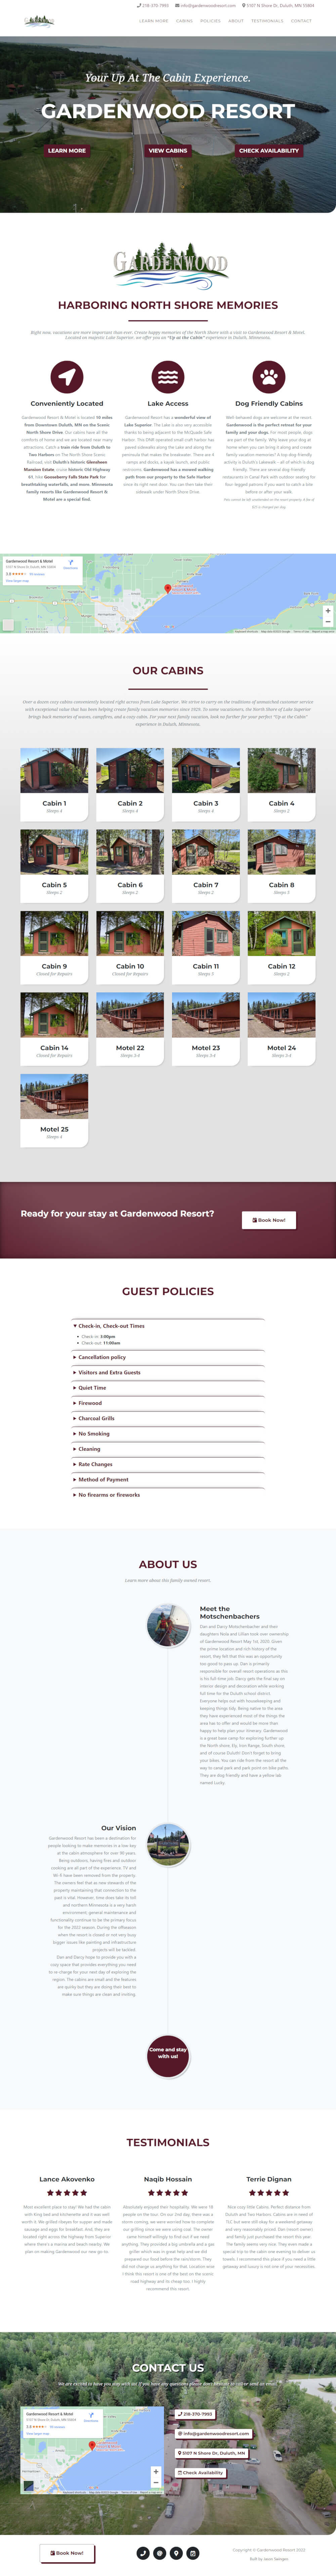 Gardenwood Resort Website